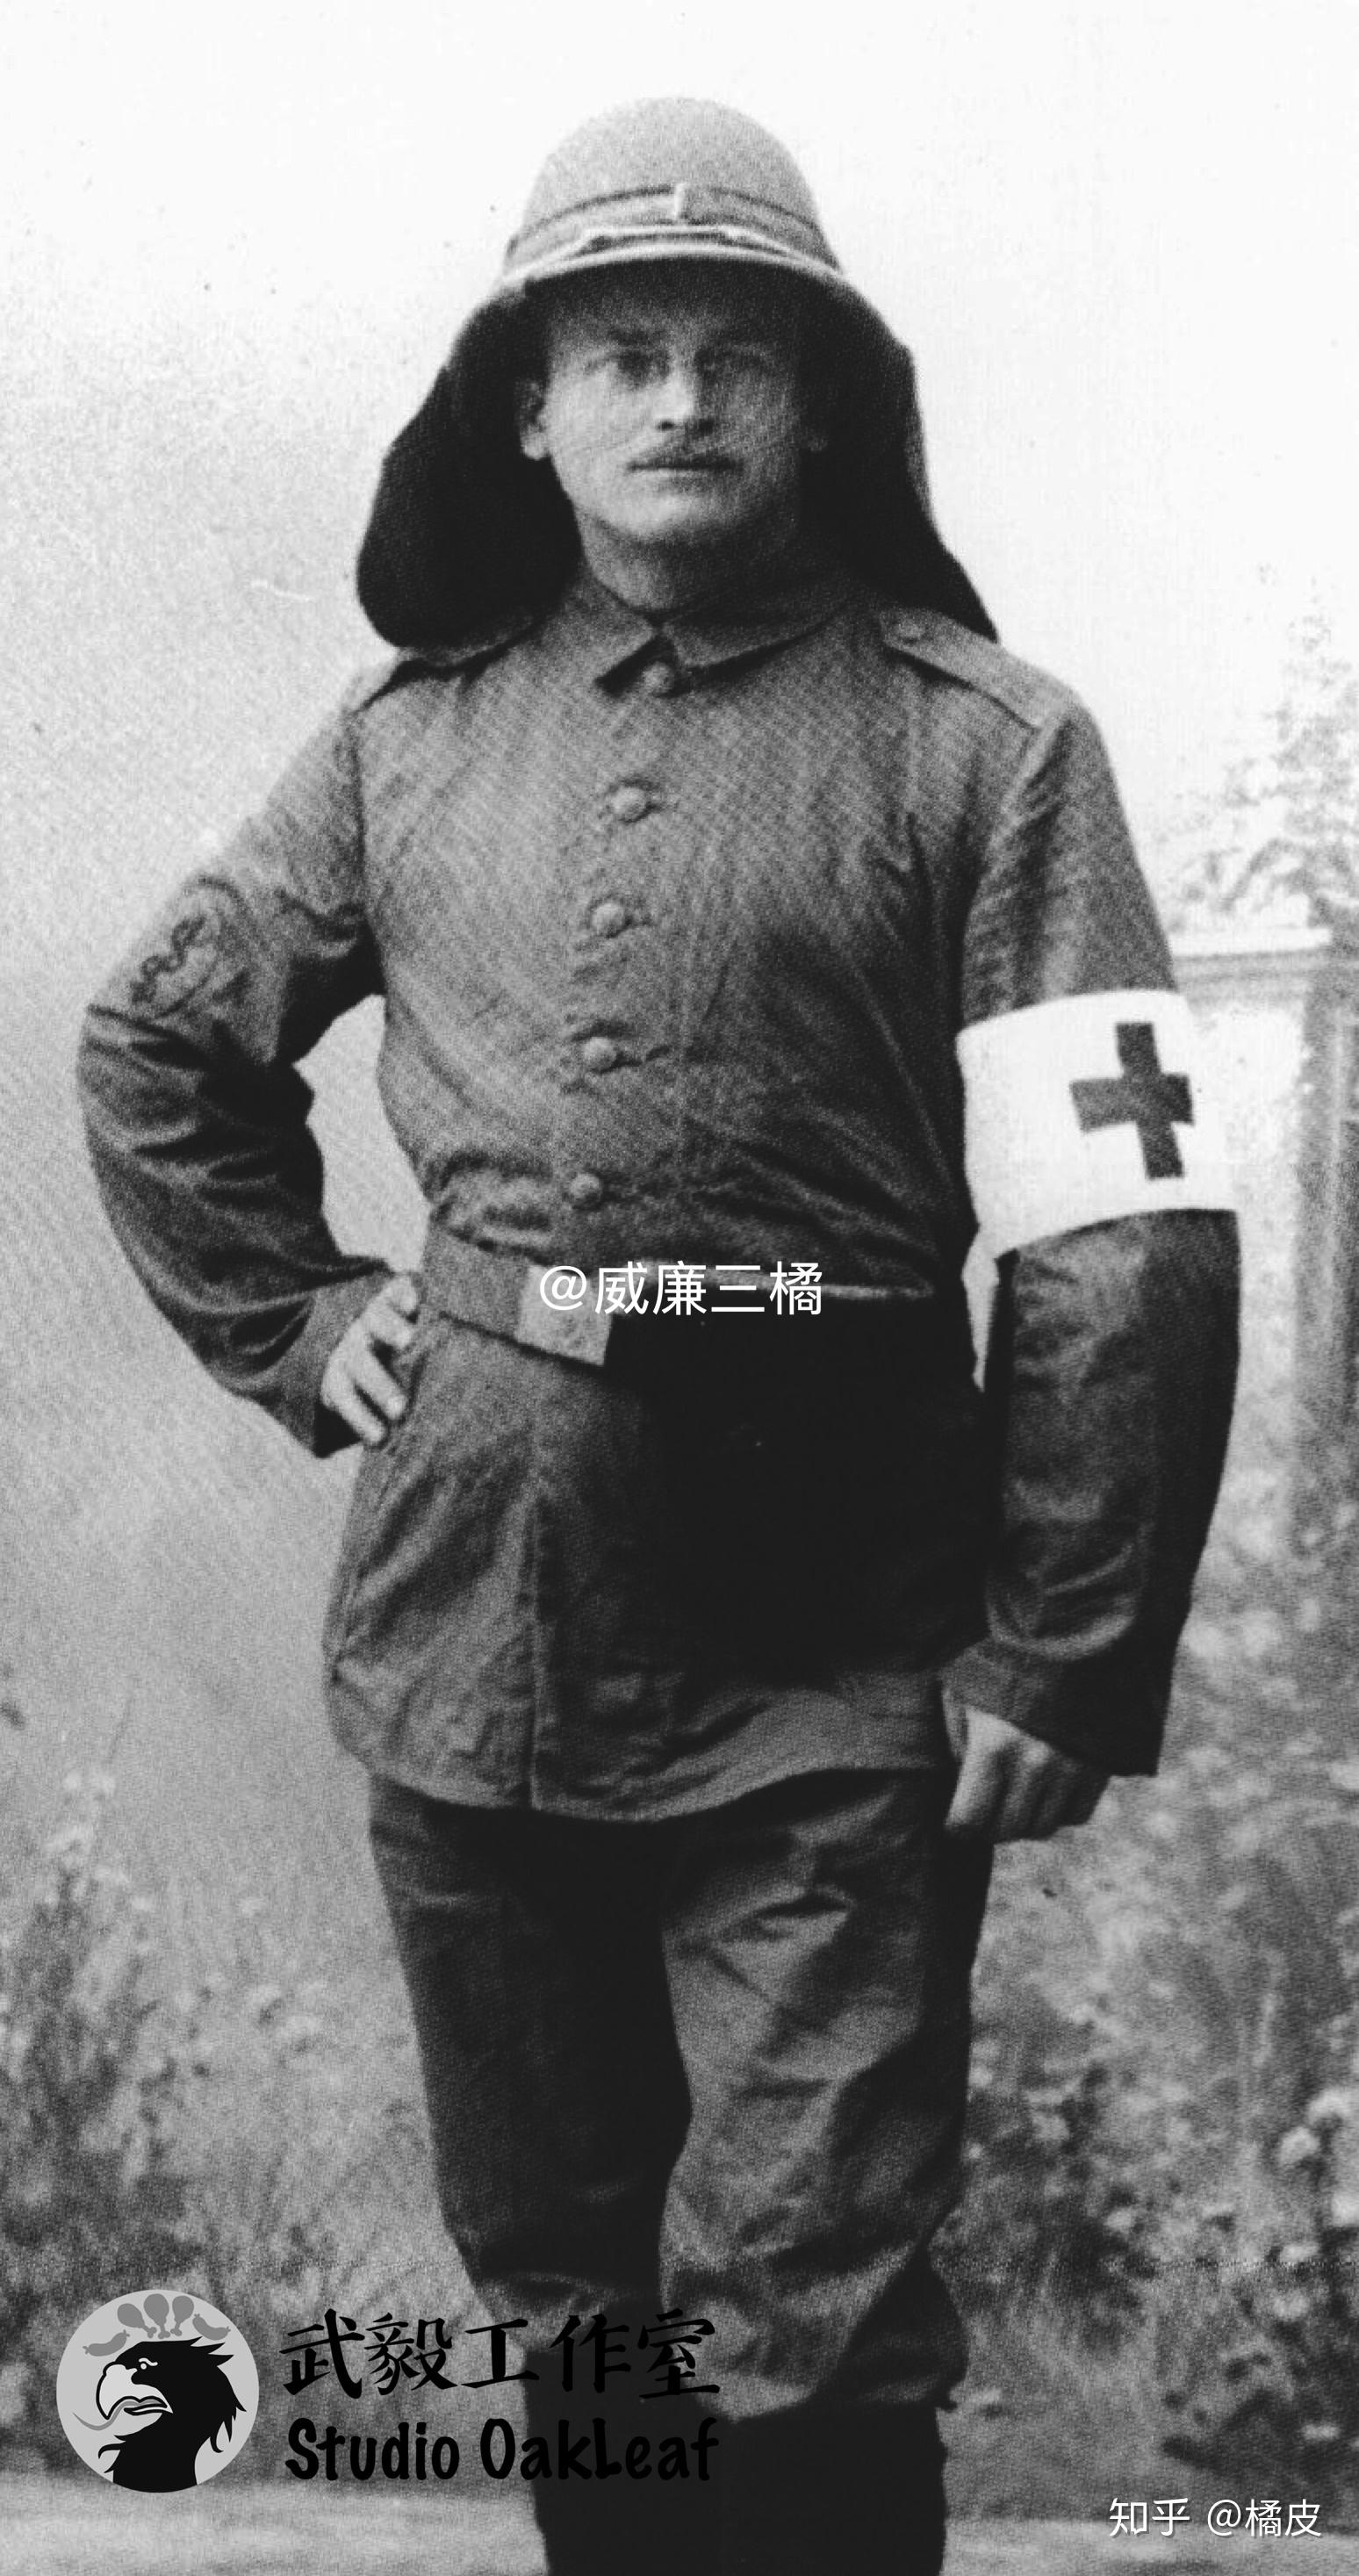 身着热带军服佩戴袖标的医疗兵1900年侵华德军剩余的库存白色檐帽也在